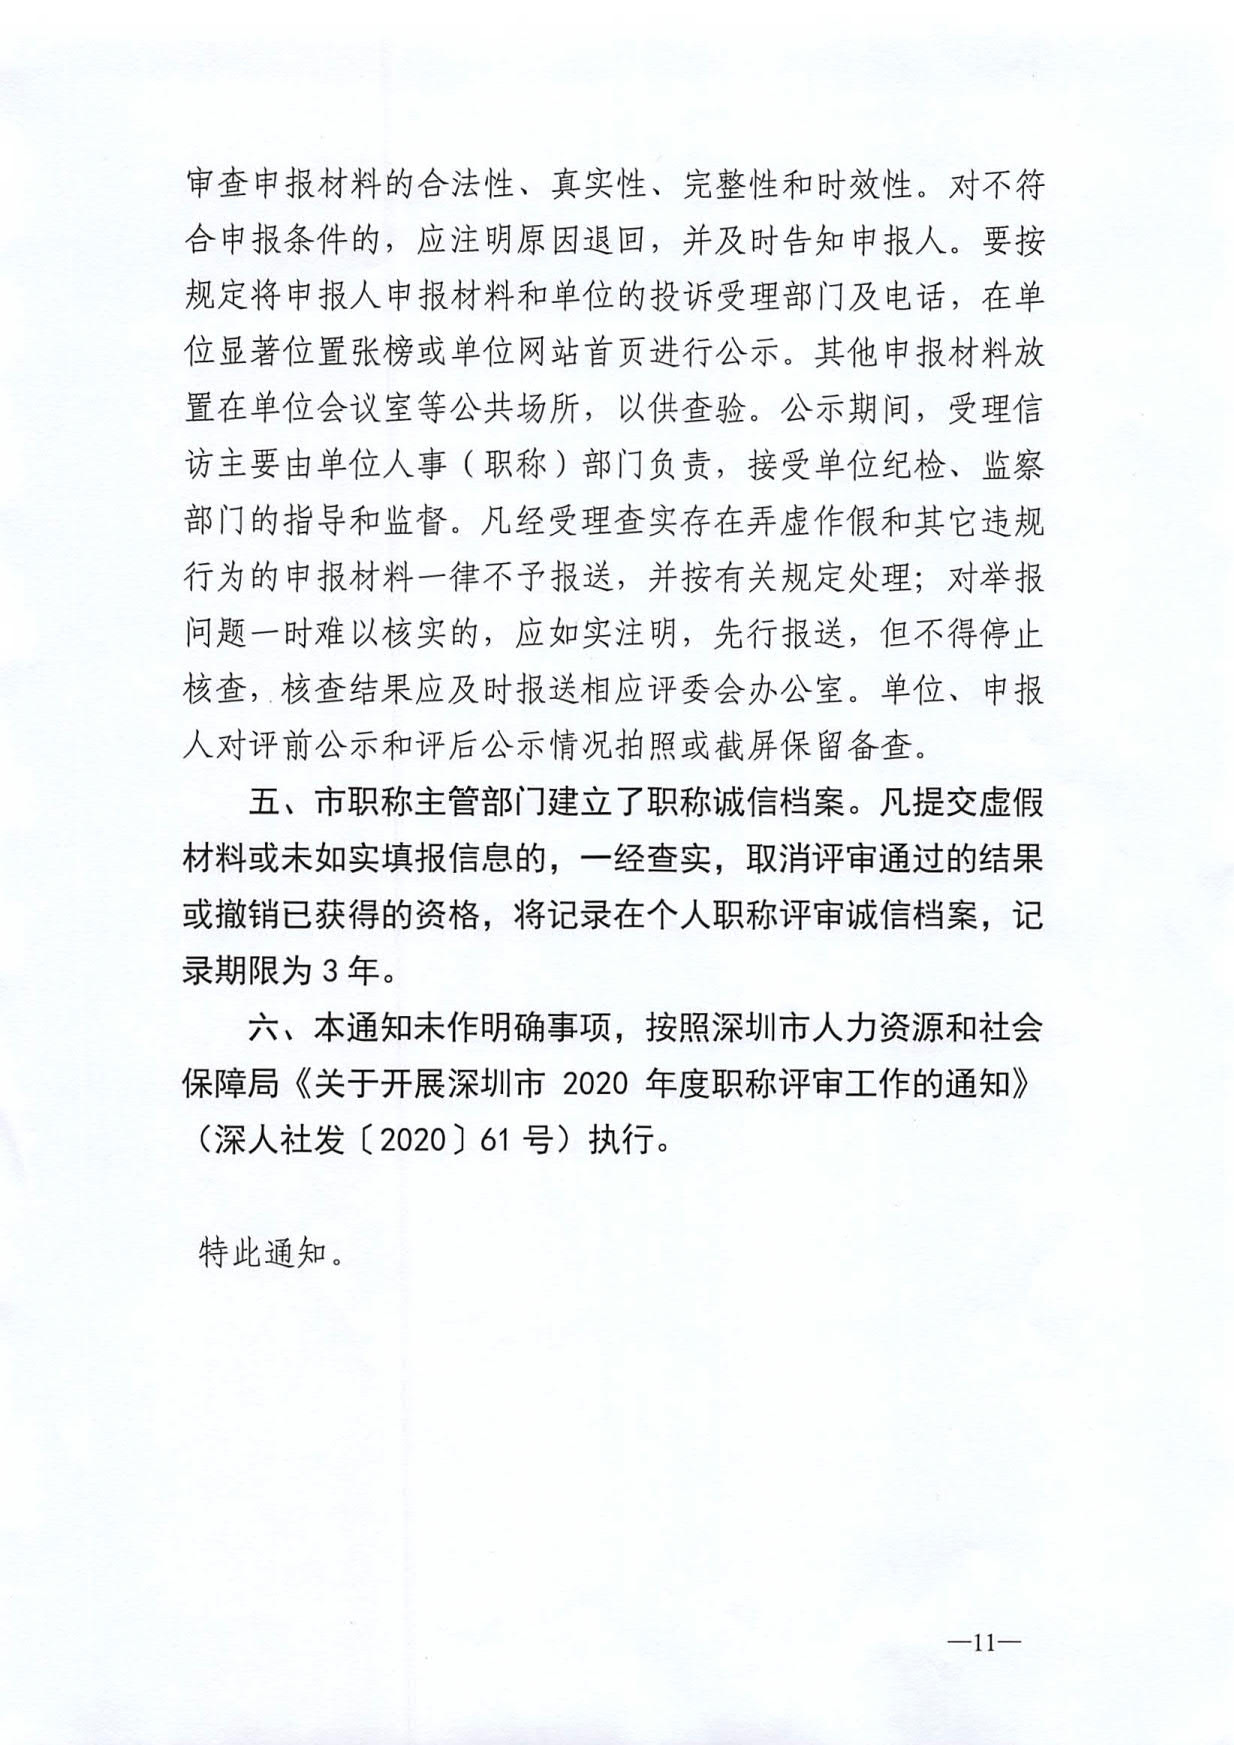 关于开展深圳市2020年度职称评审工作的通知_12.jpg